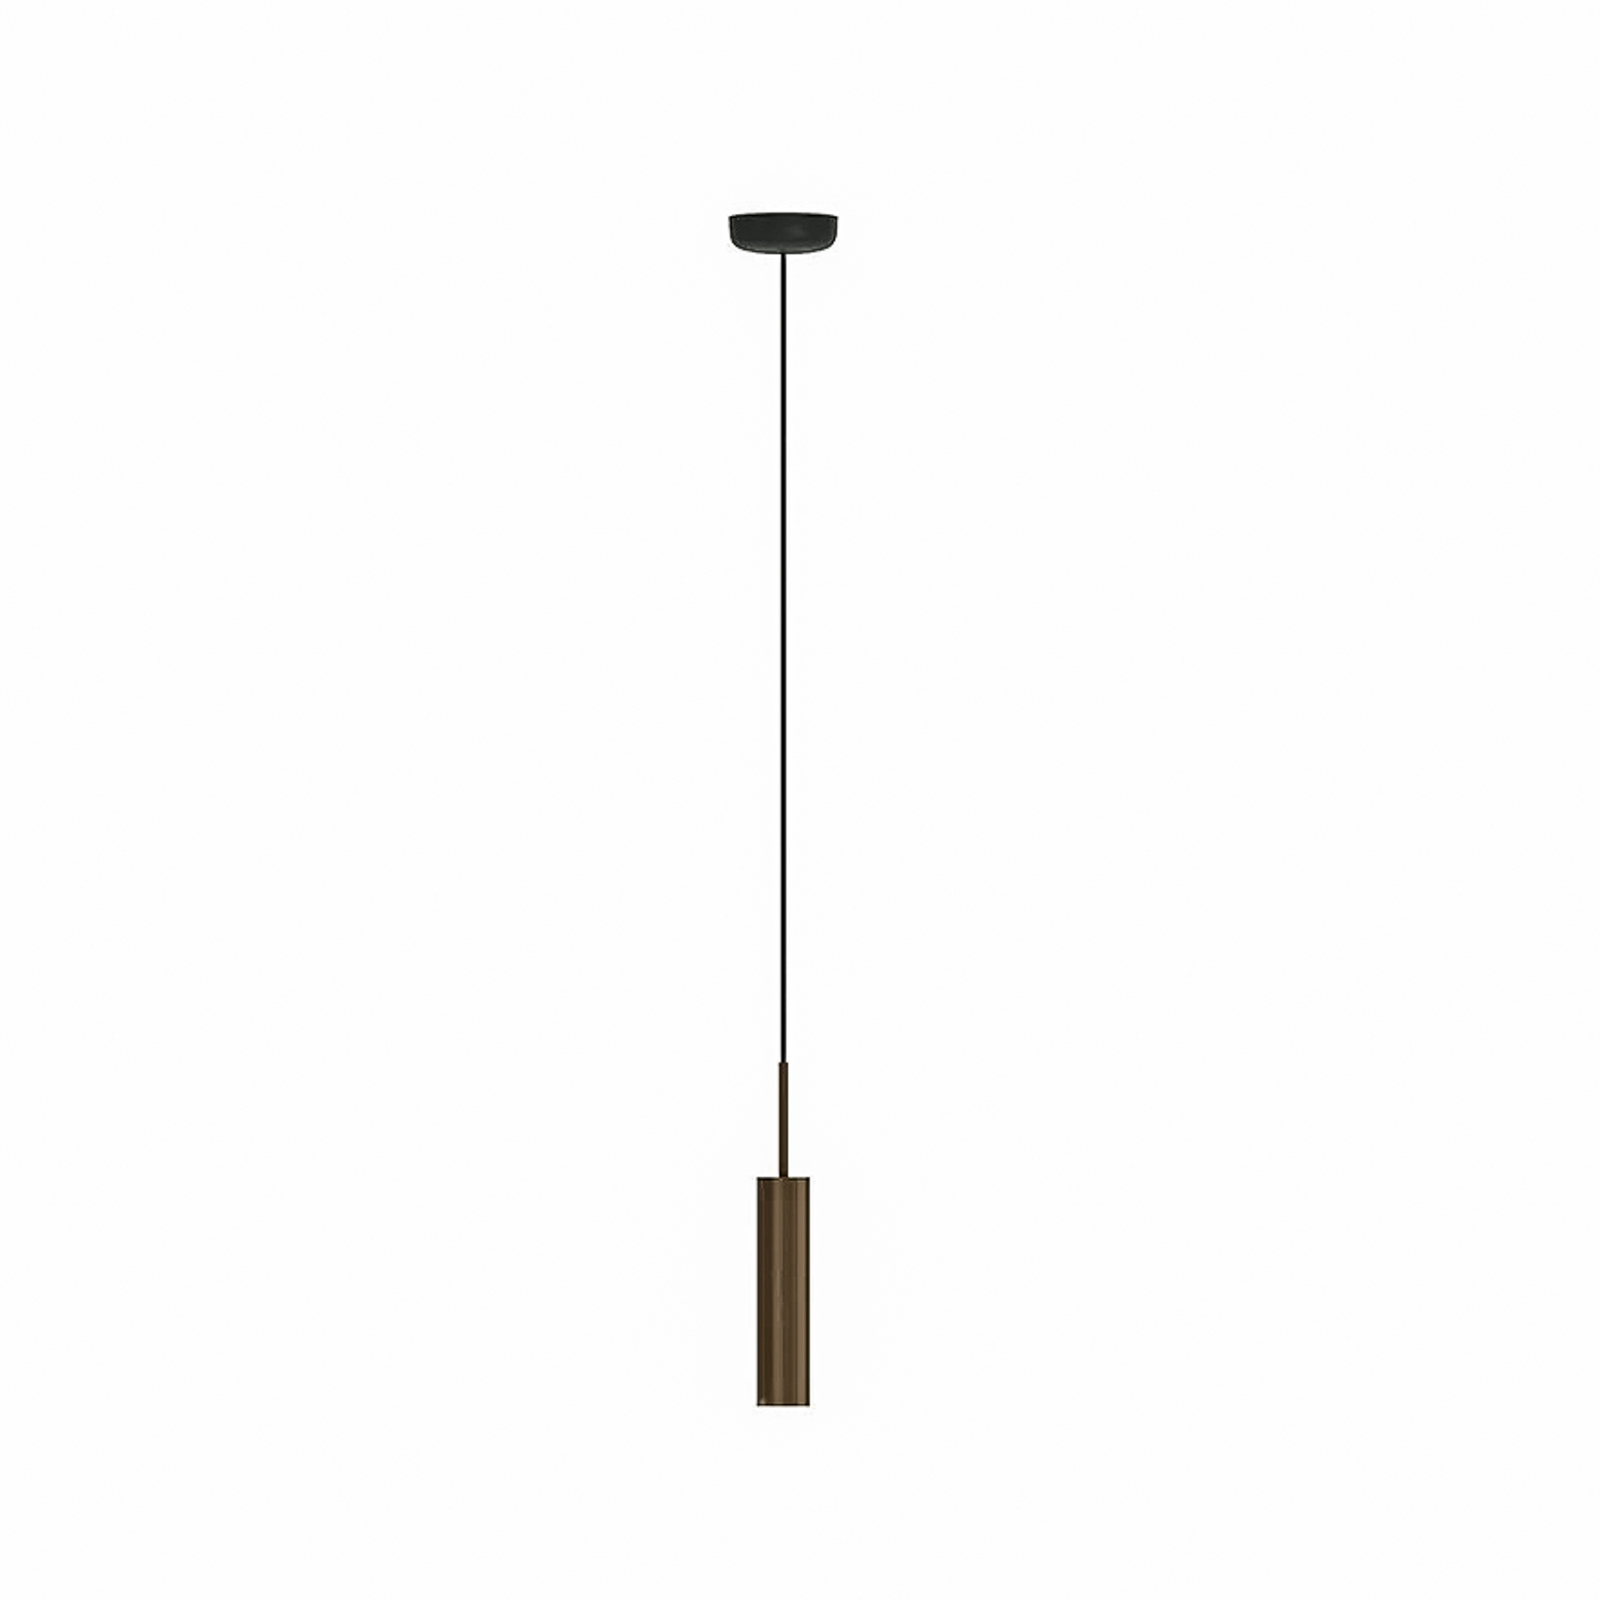 Audo hanglamp Tubulaire, 24 cm, bronskleurig, aluminium